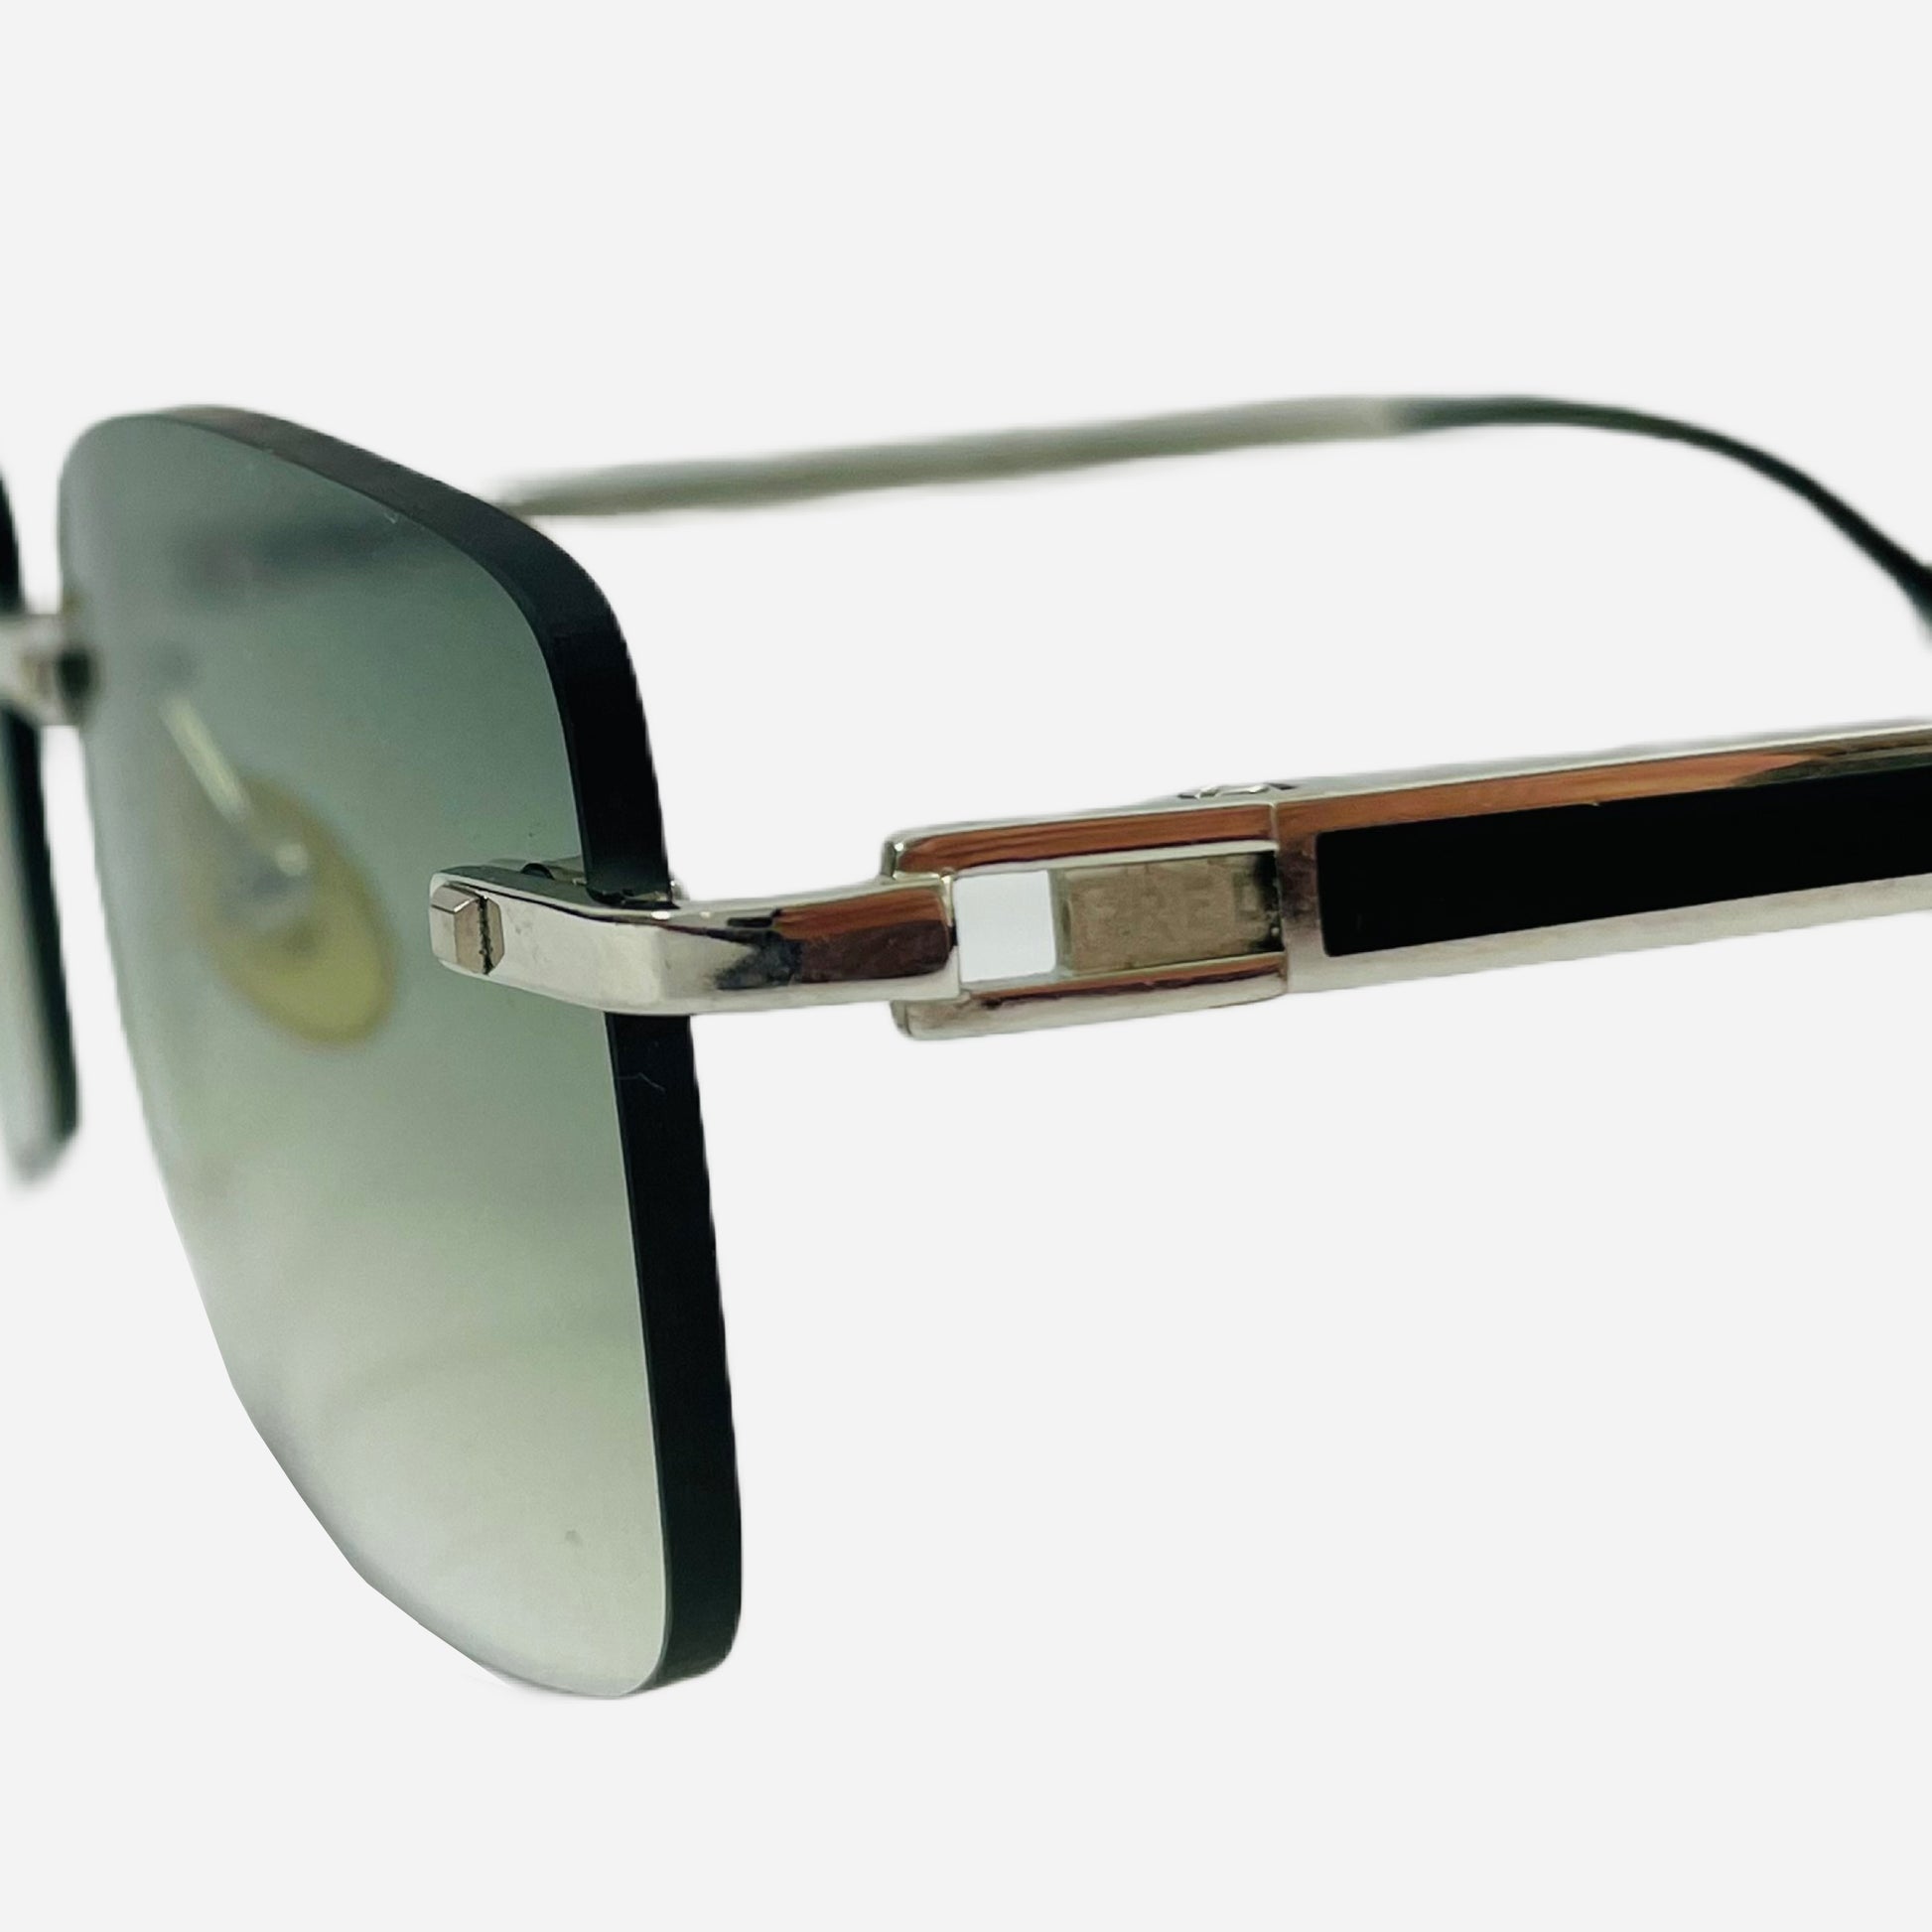 Fred-Paris-Sonnenbrille-Sunglasses-Jamaique-rimless-rahmenlose-Sonnenbrille-the-seekers-detail